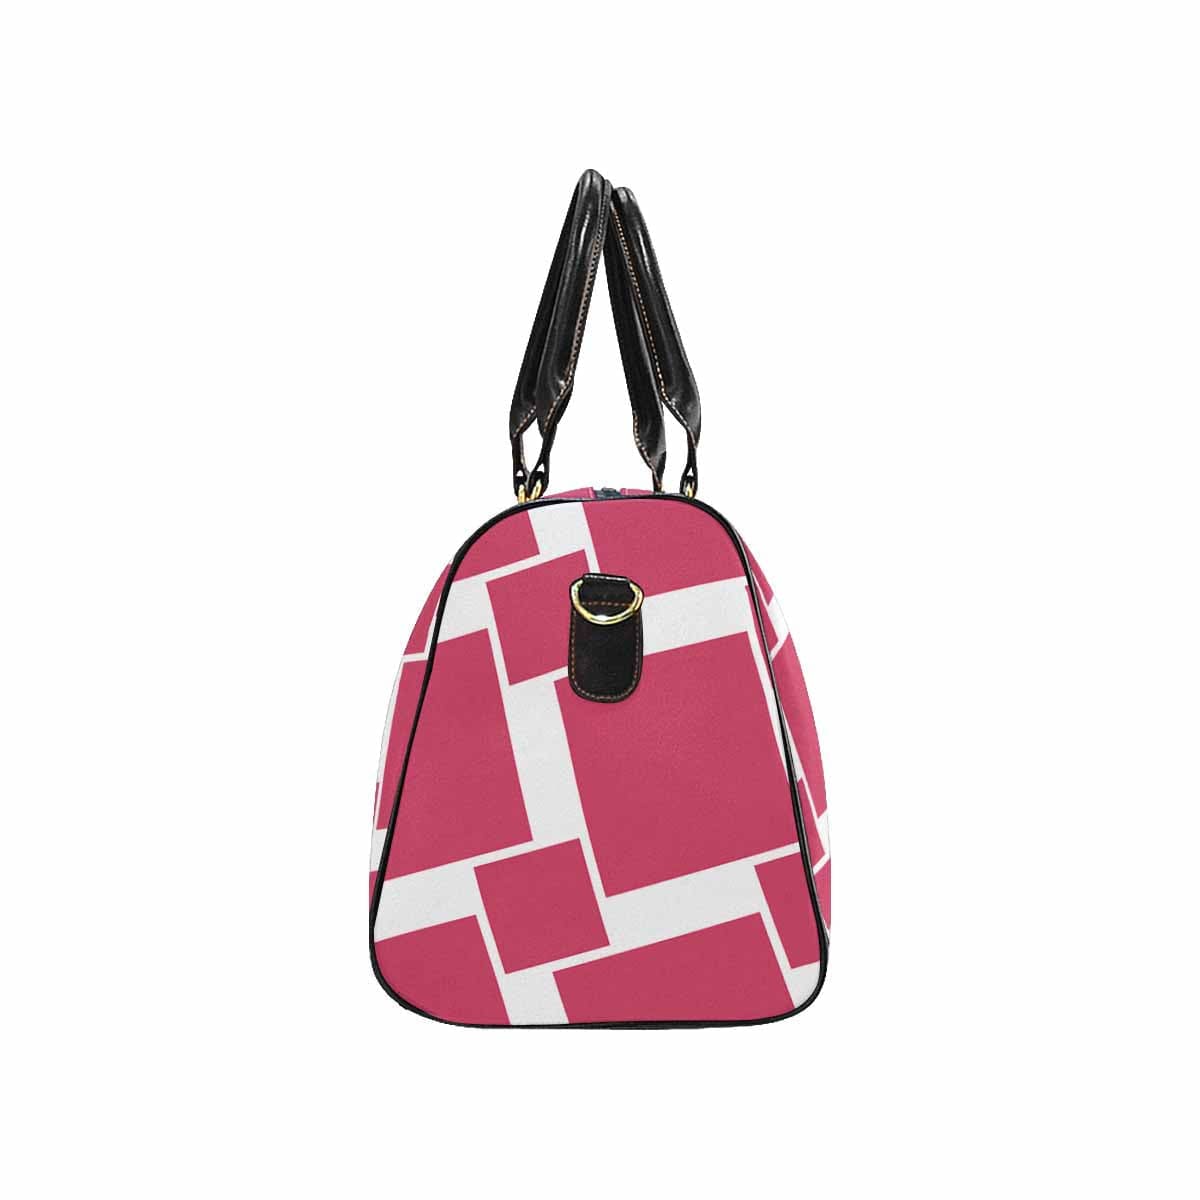 Travel Bag Adjustable Shoulder Strap Carry On Bag Hot Pink - Bags | Travel Bags